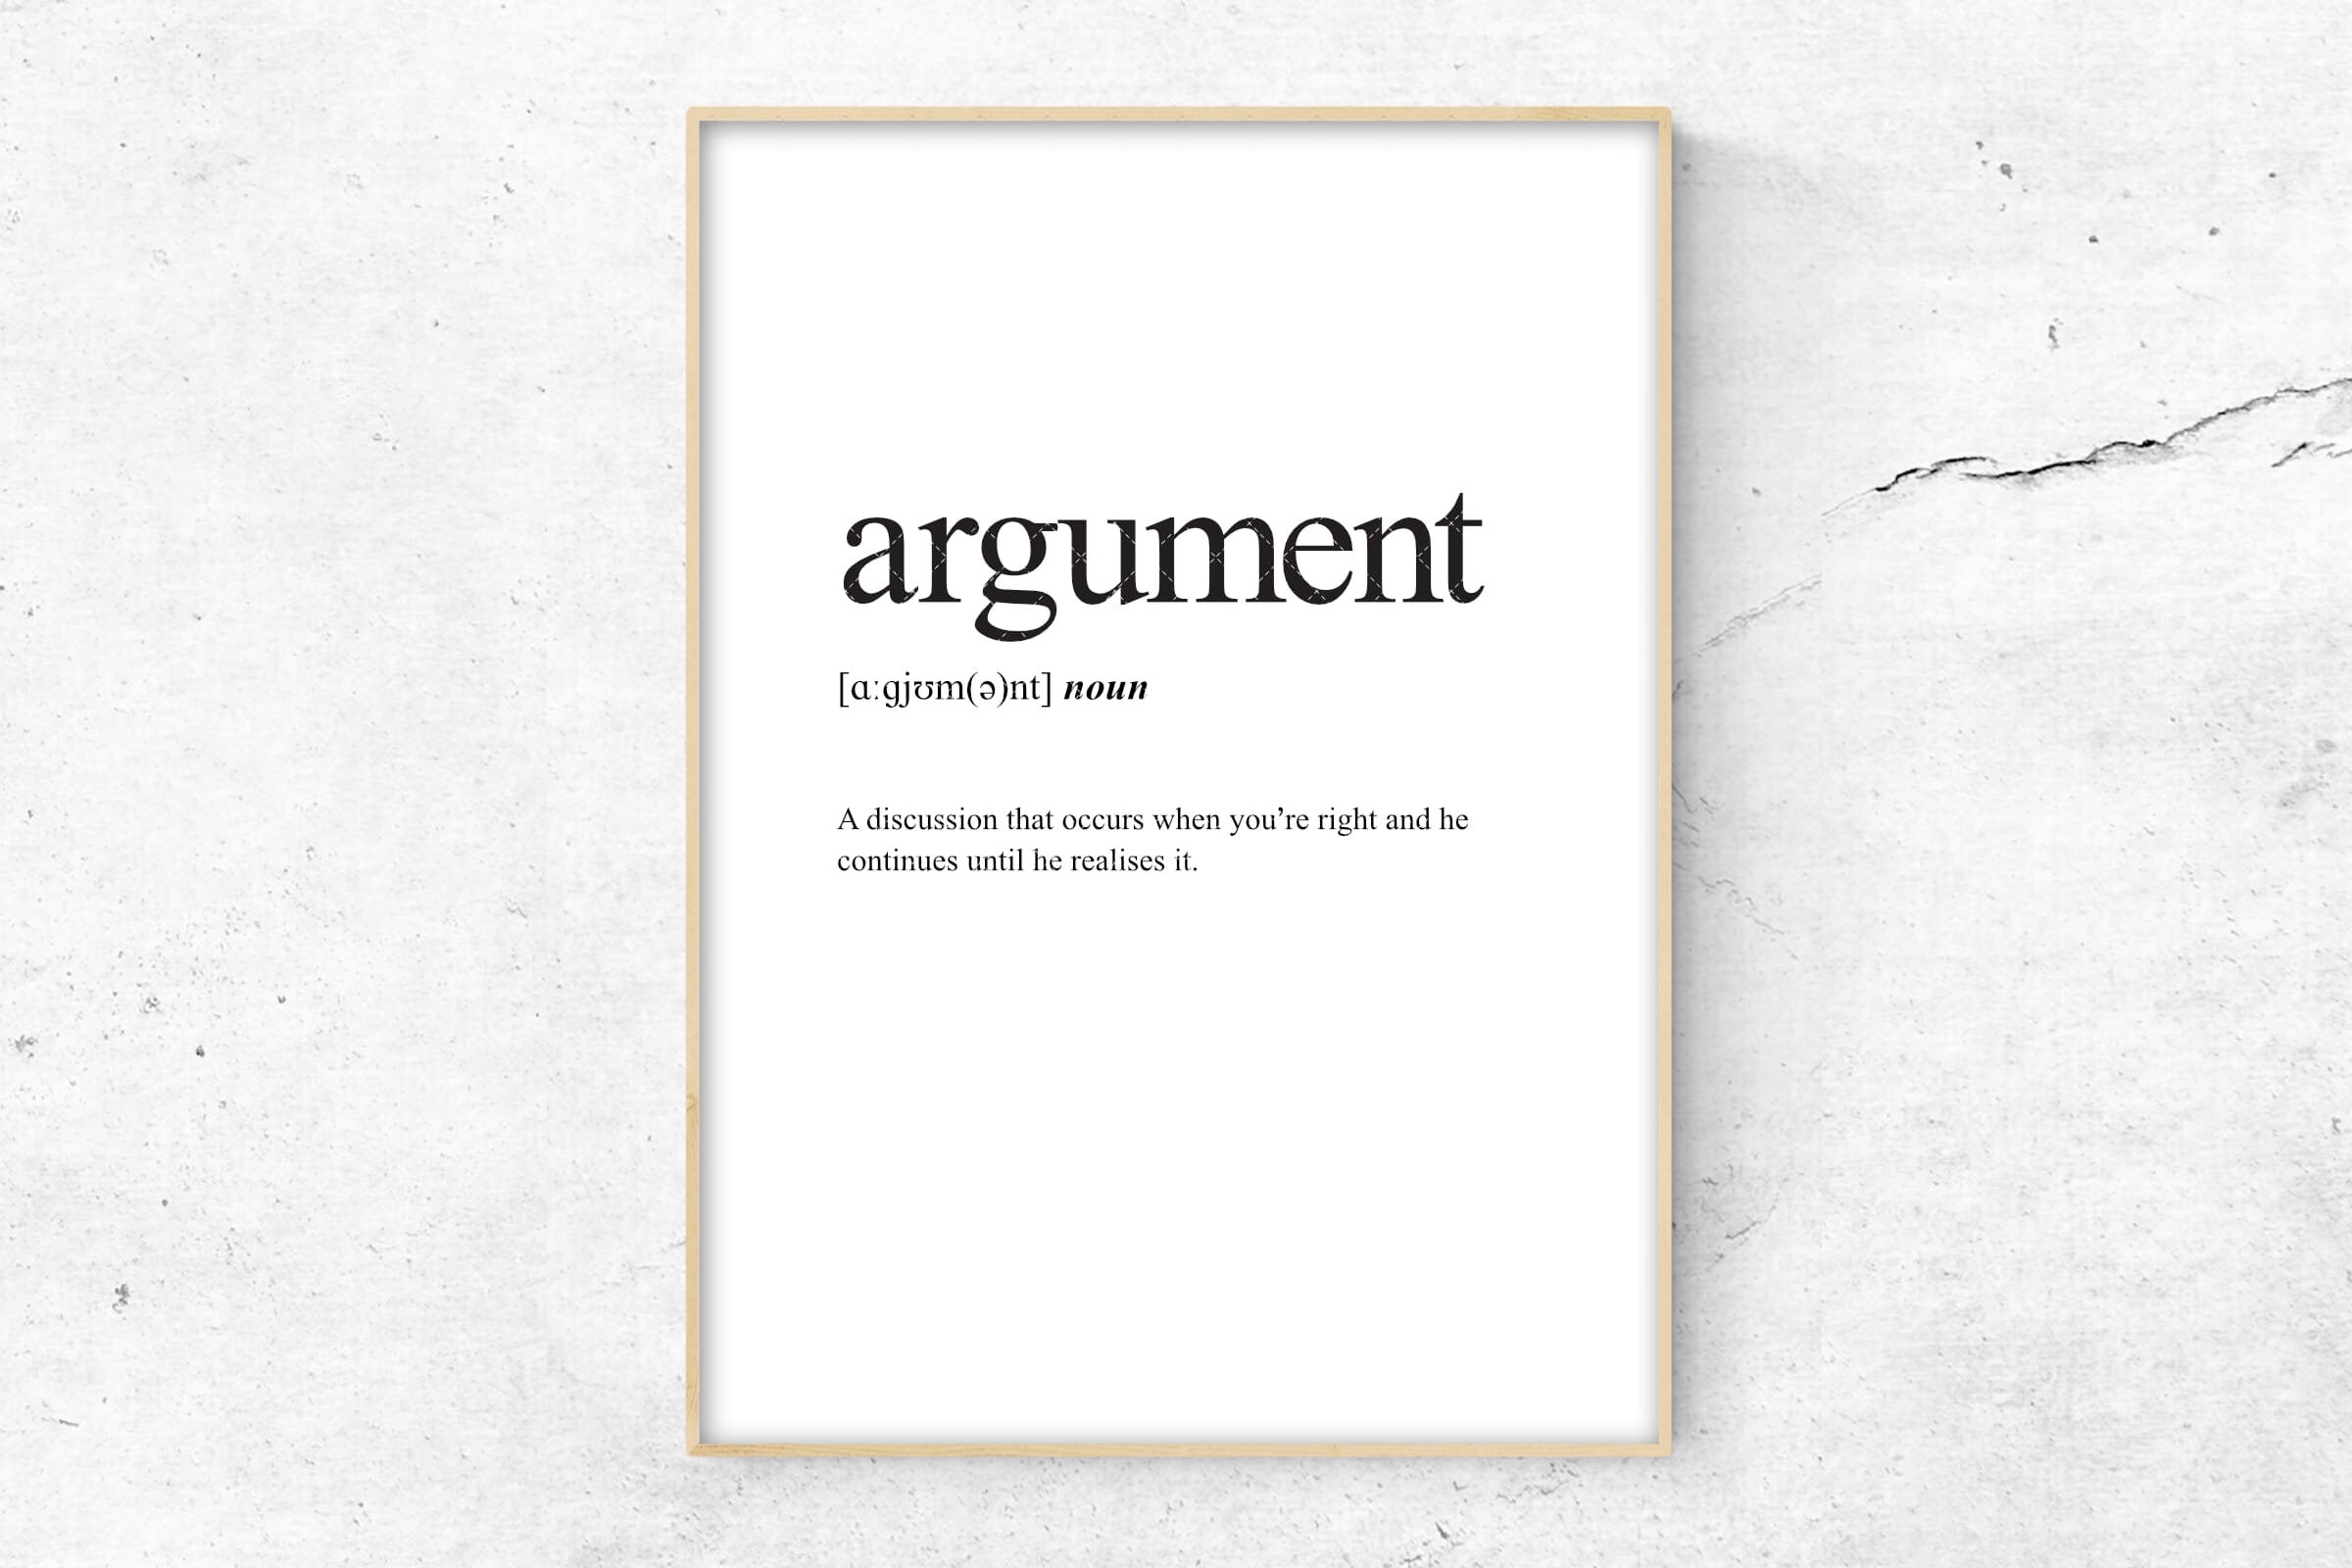 Argument definition. Adolescence Definition. Empowerment Definition.